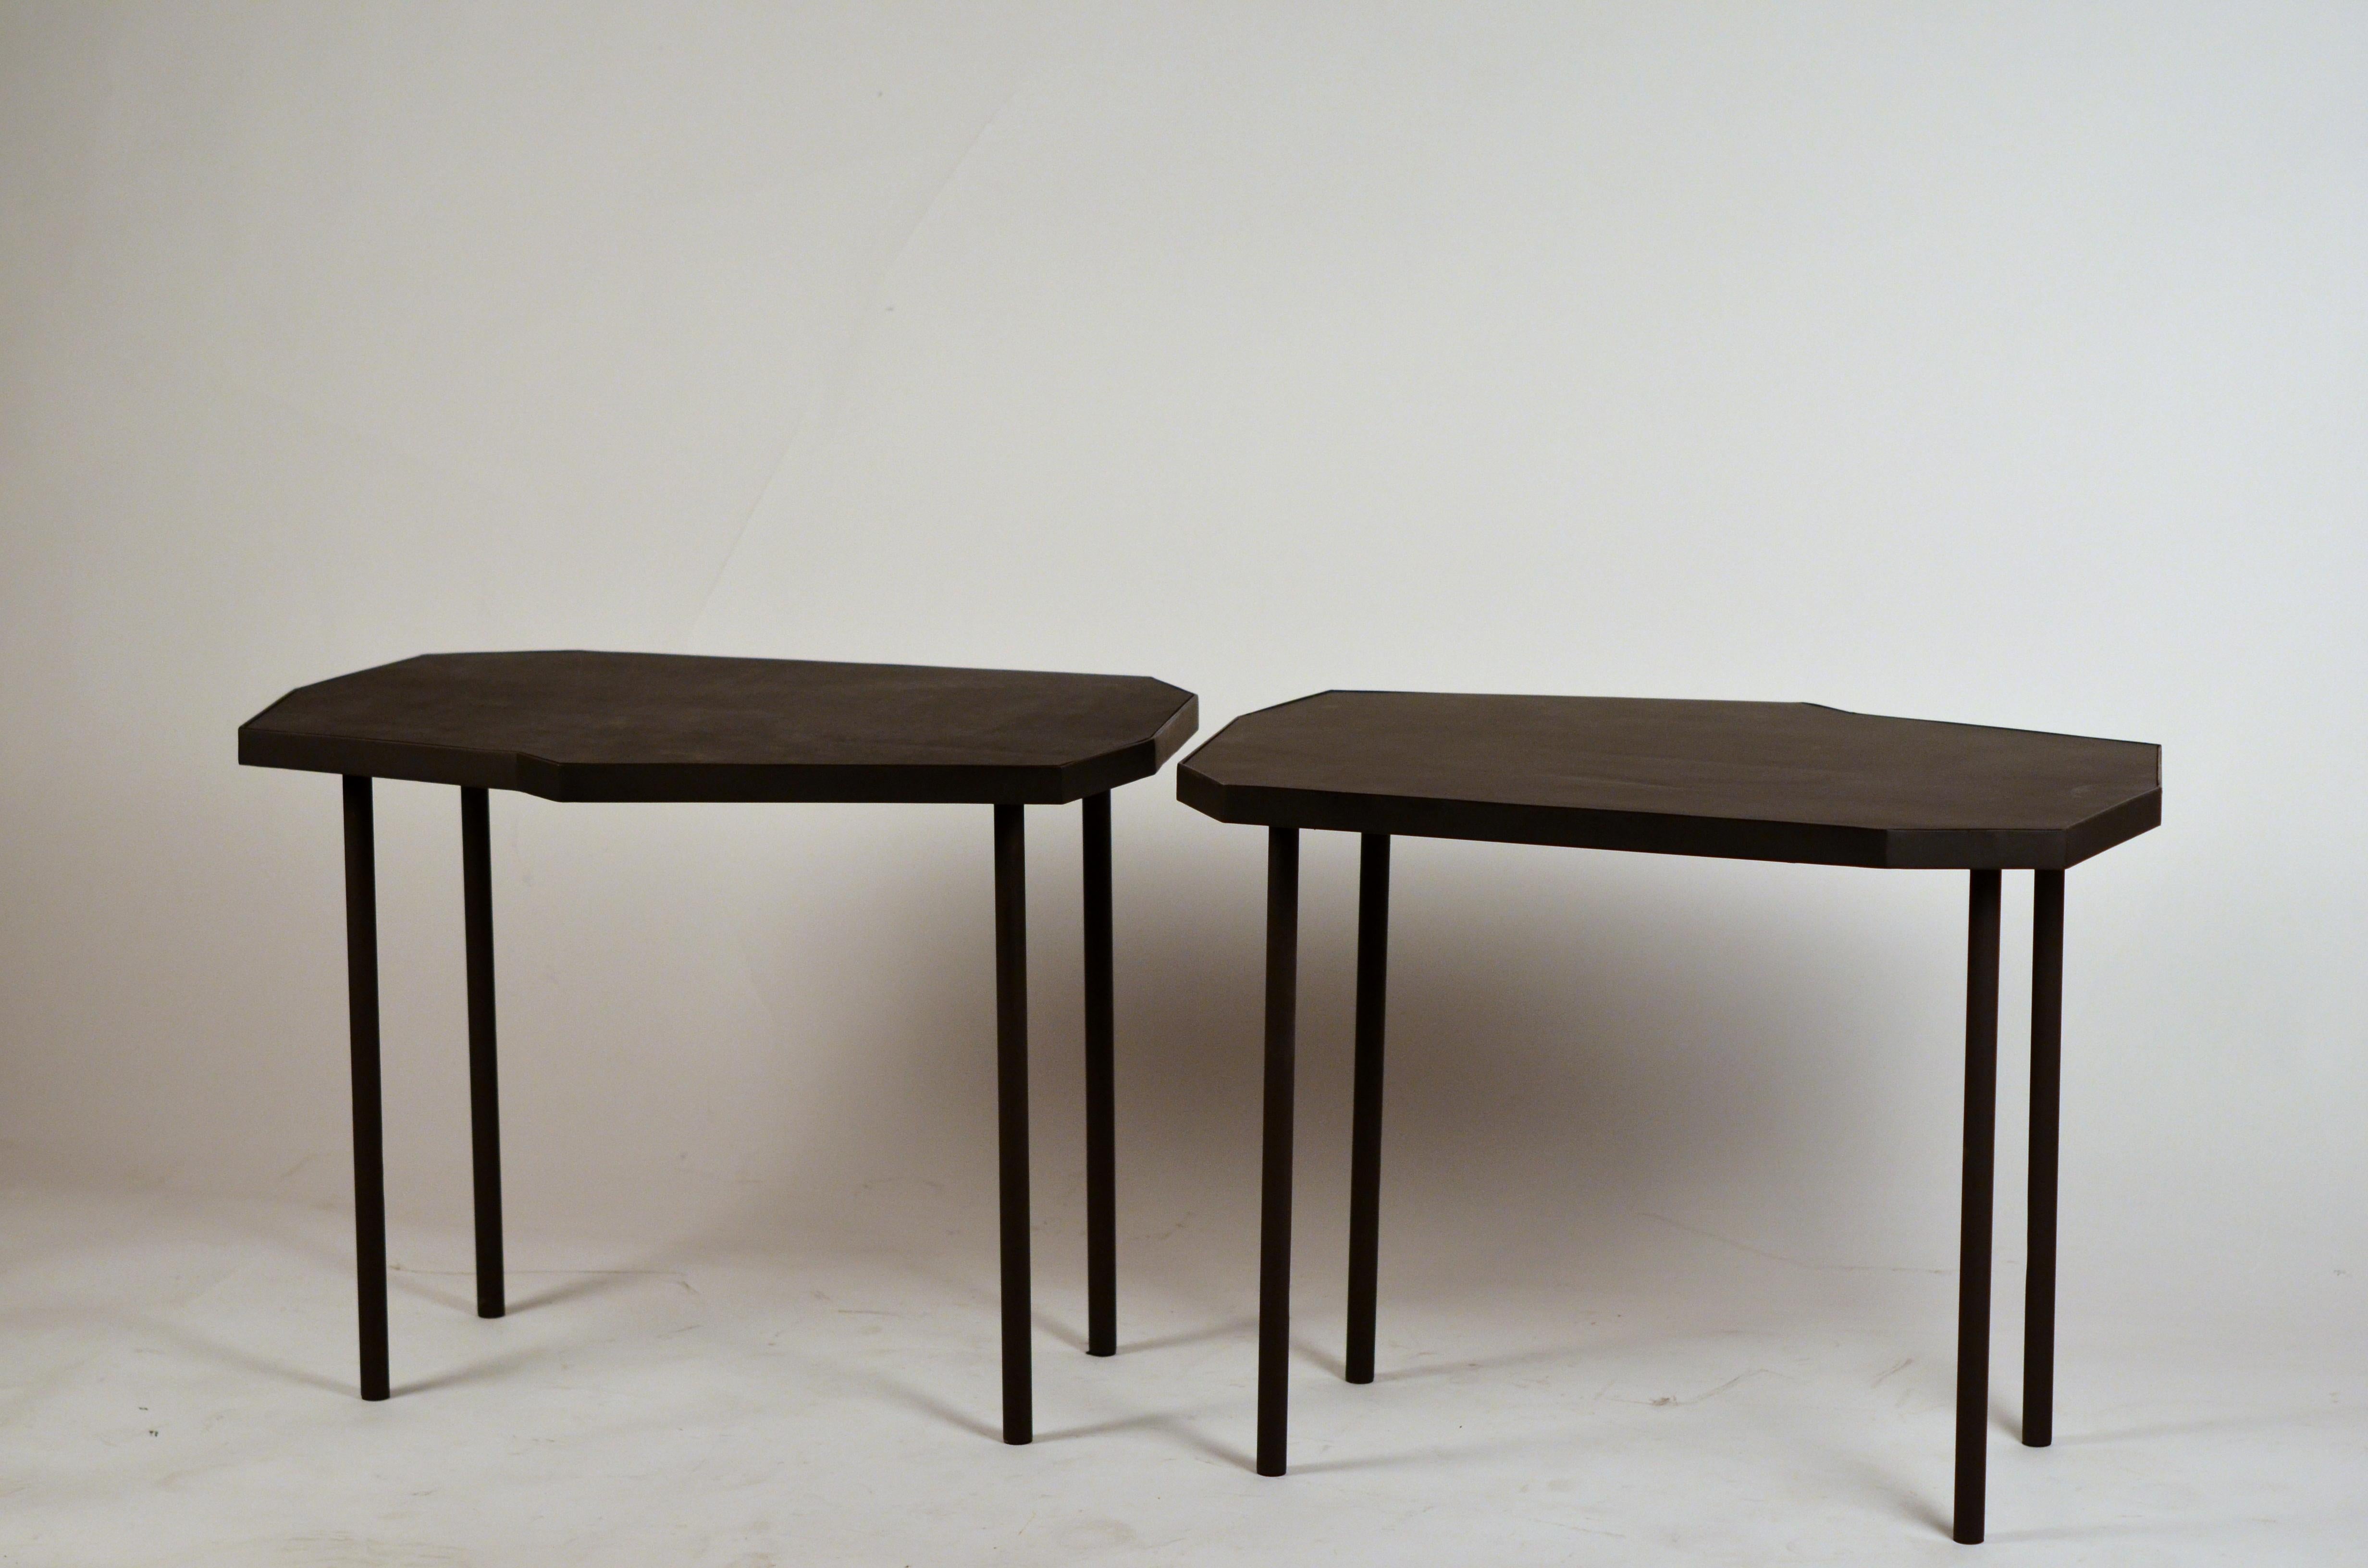 Zwei asymmetrische Beistelltische 'Décagone' aus schwarzem Leder von Design Frères.

Hervorragend neben einem Paar Sesseln.